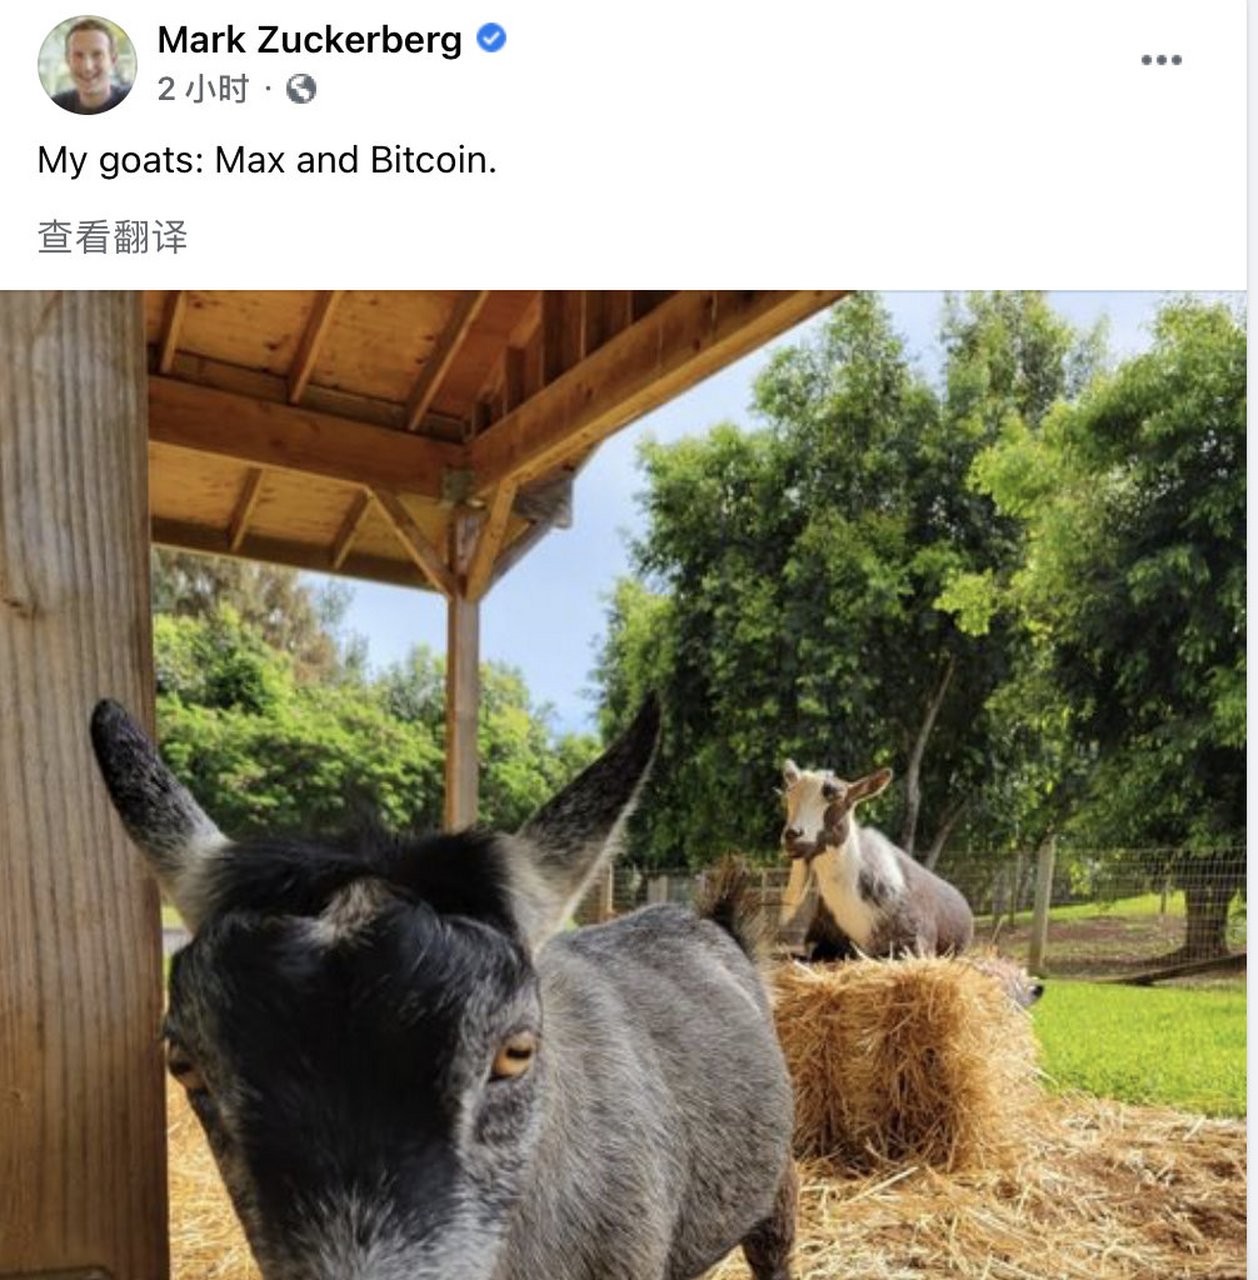 【扎克伯格为自己的山羊取名比特币】  5月11日,facebook创始人mark